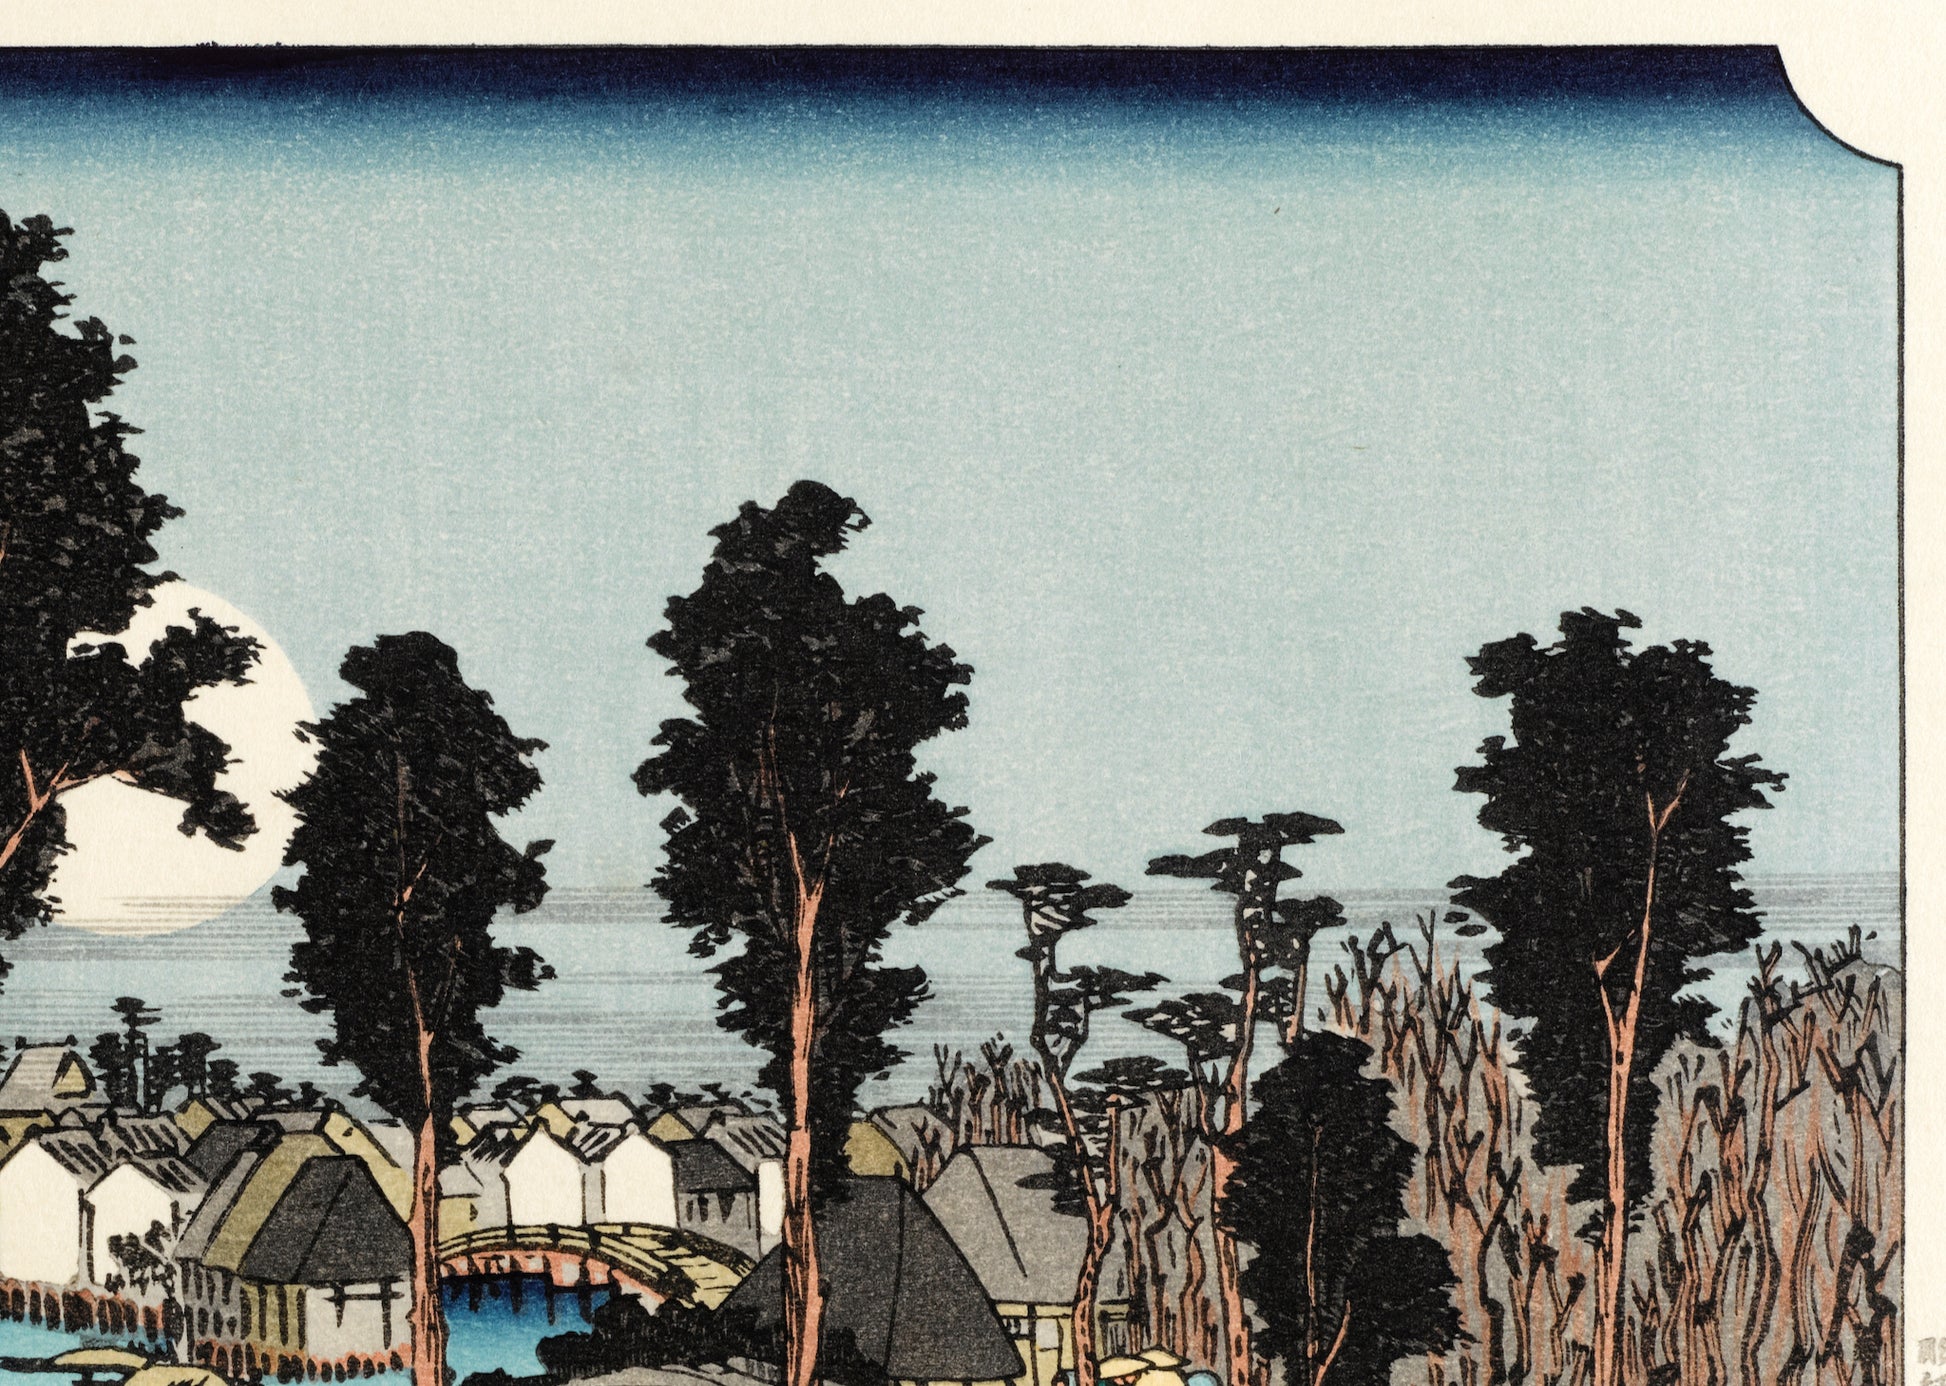 estampe japonaise de Hiroshige, des voyageurs sur la route du Tokaido arrivent au village de Nemazu, sous une nuit de pleine lune, le ciel et les arbres